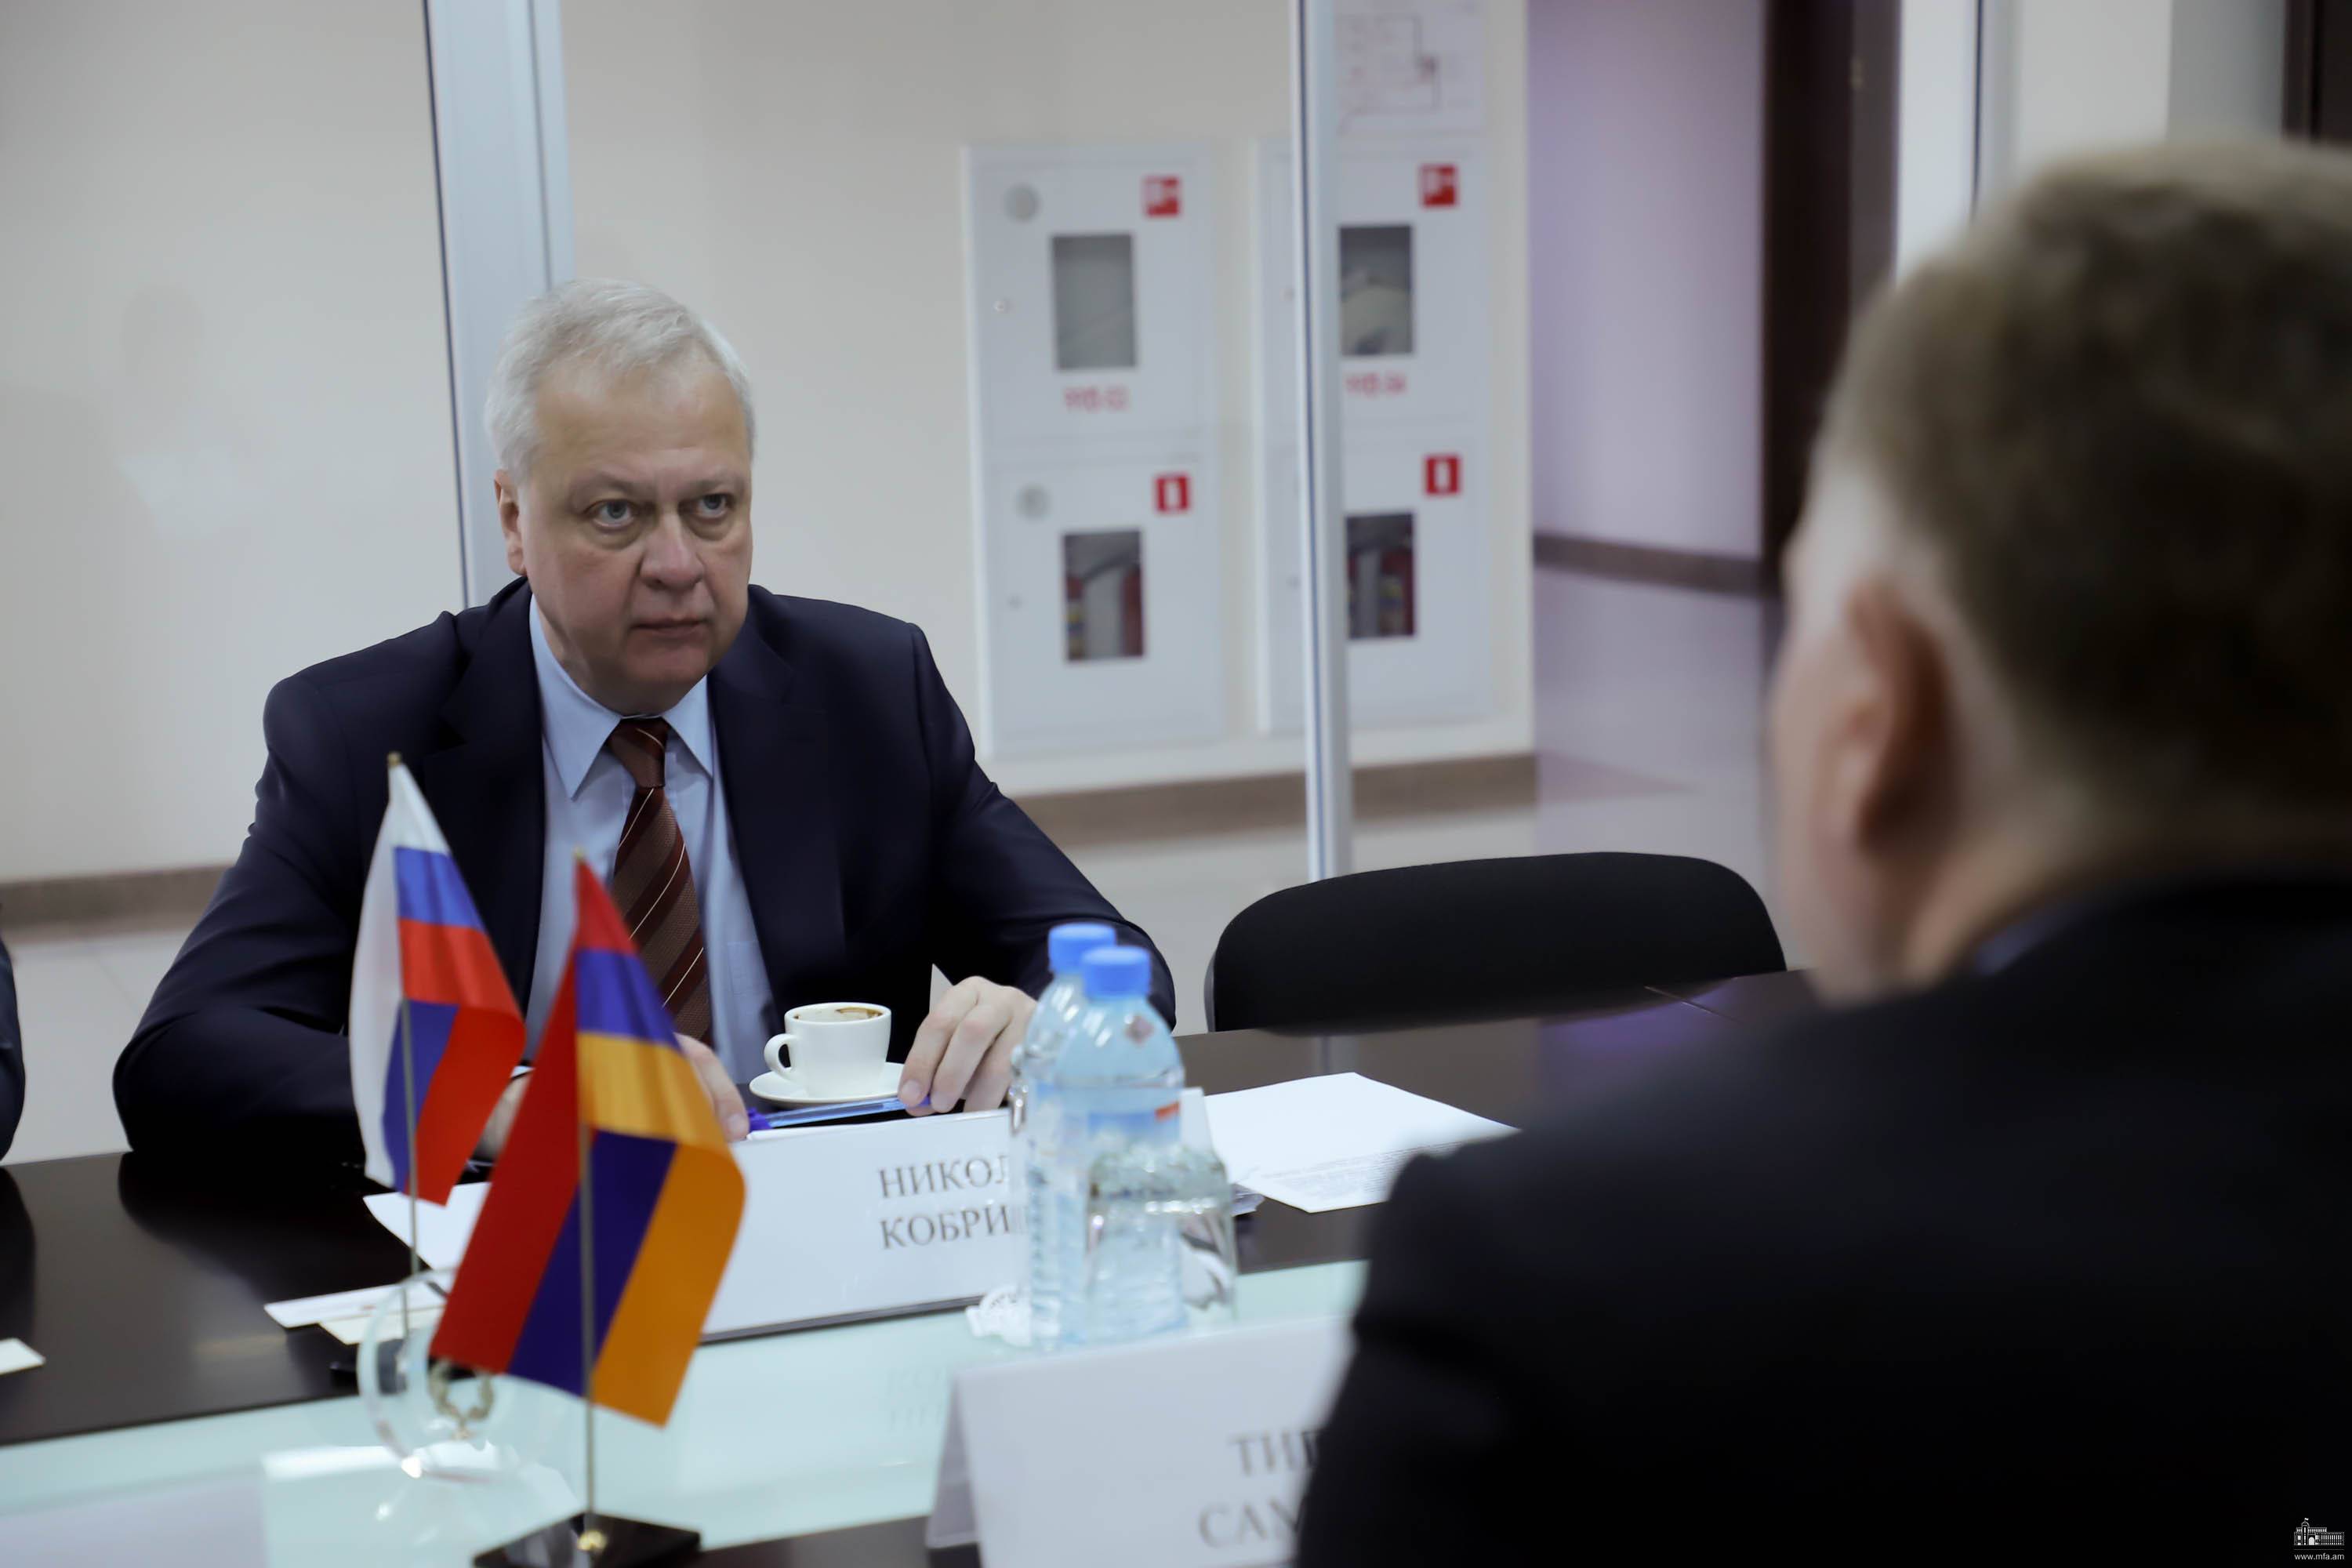 Երևանում անցկացվել են քաղաքական խորհրդակցություններ ՀՀ և ՌԴ ԱԳ նախարարությունների միջև